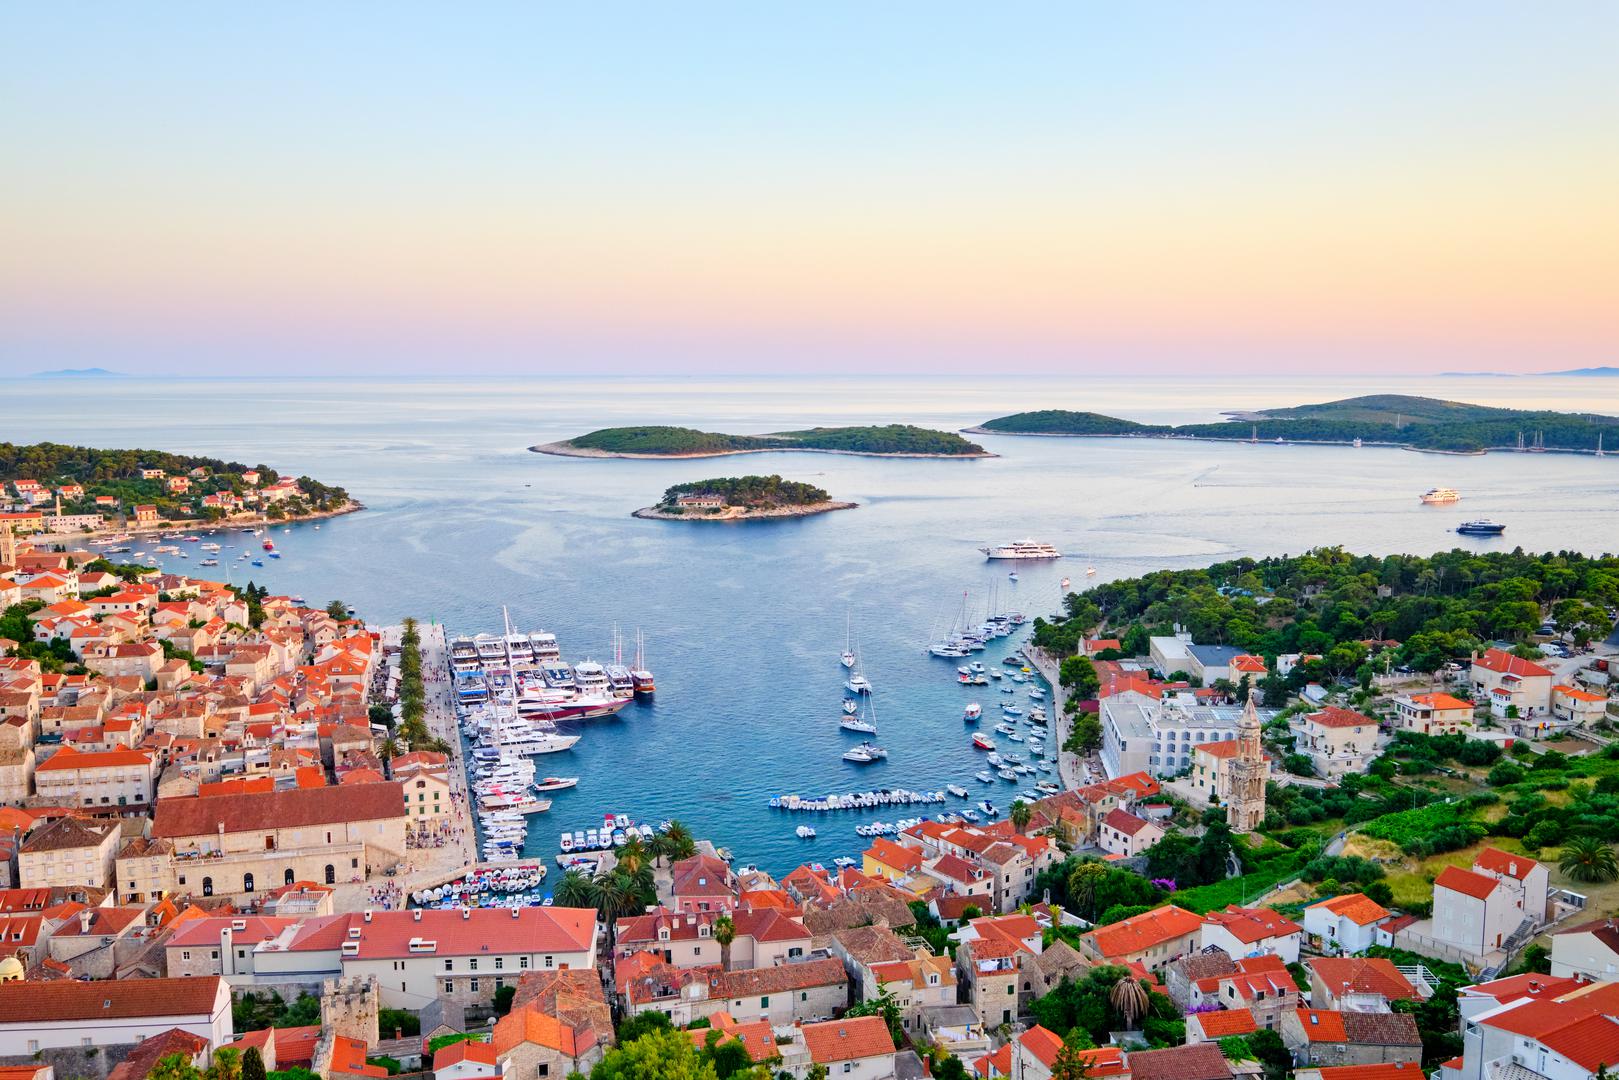 14. Hrvatska ima preko 1000 otoka, otočića i hridi, što je čini jednom od najrazuđenijih obala u Europi.